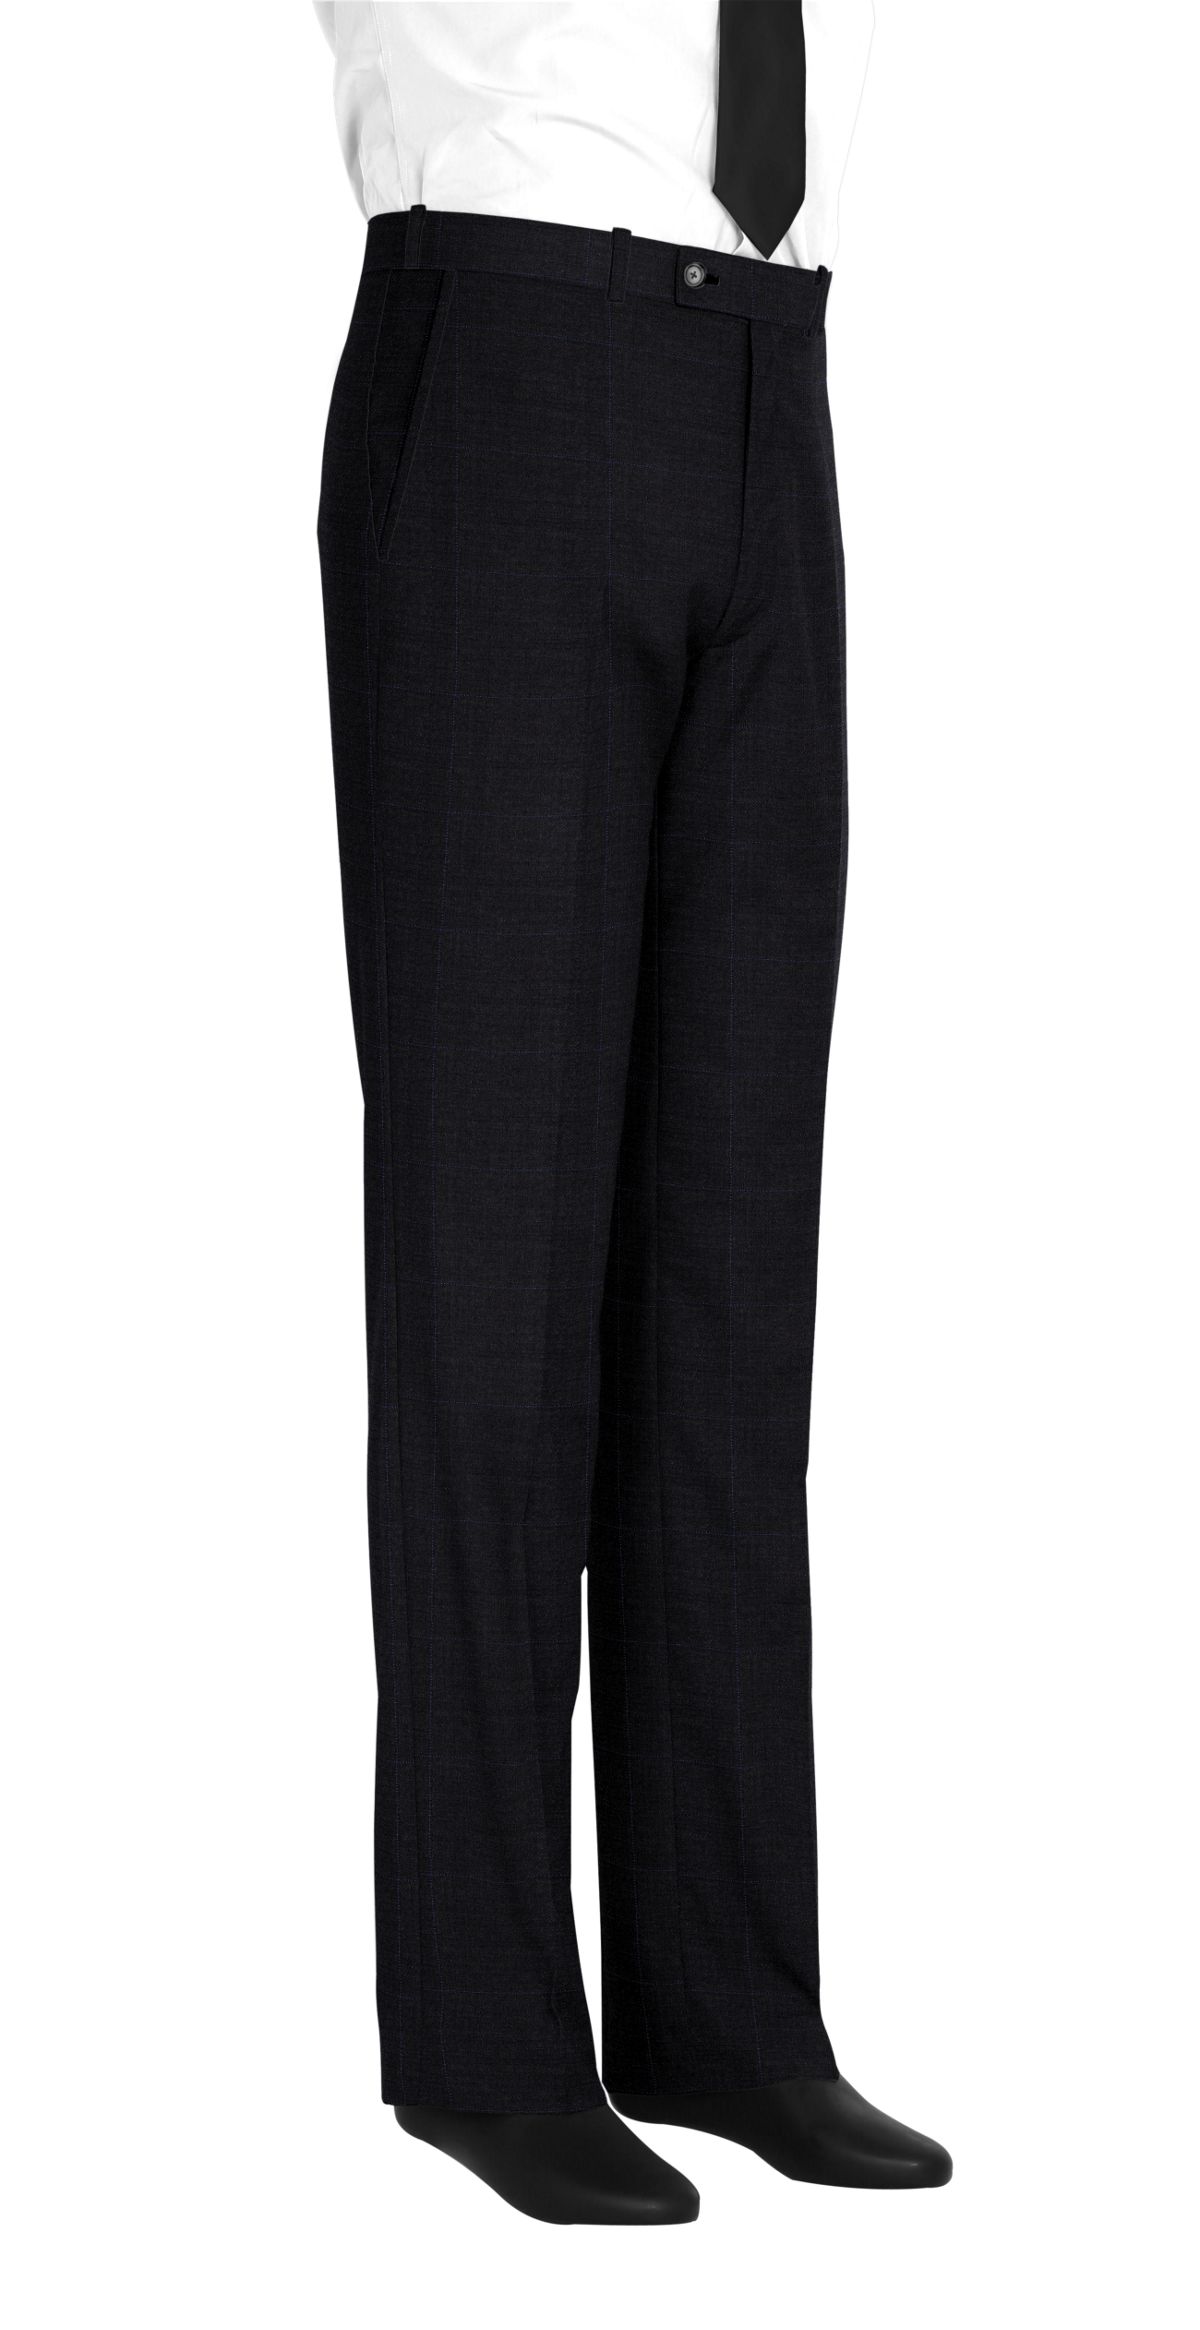 Pantalon homme sur mesure et personnalisé gris anthracite carreaux  bas simple sans revers